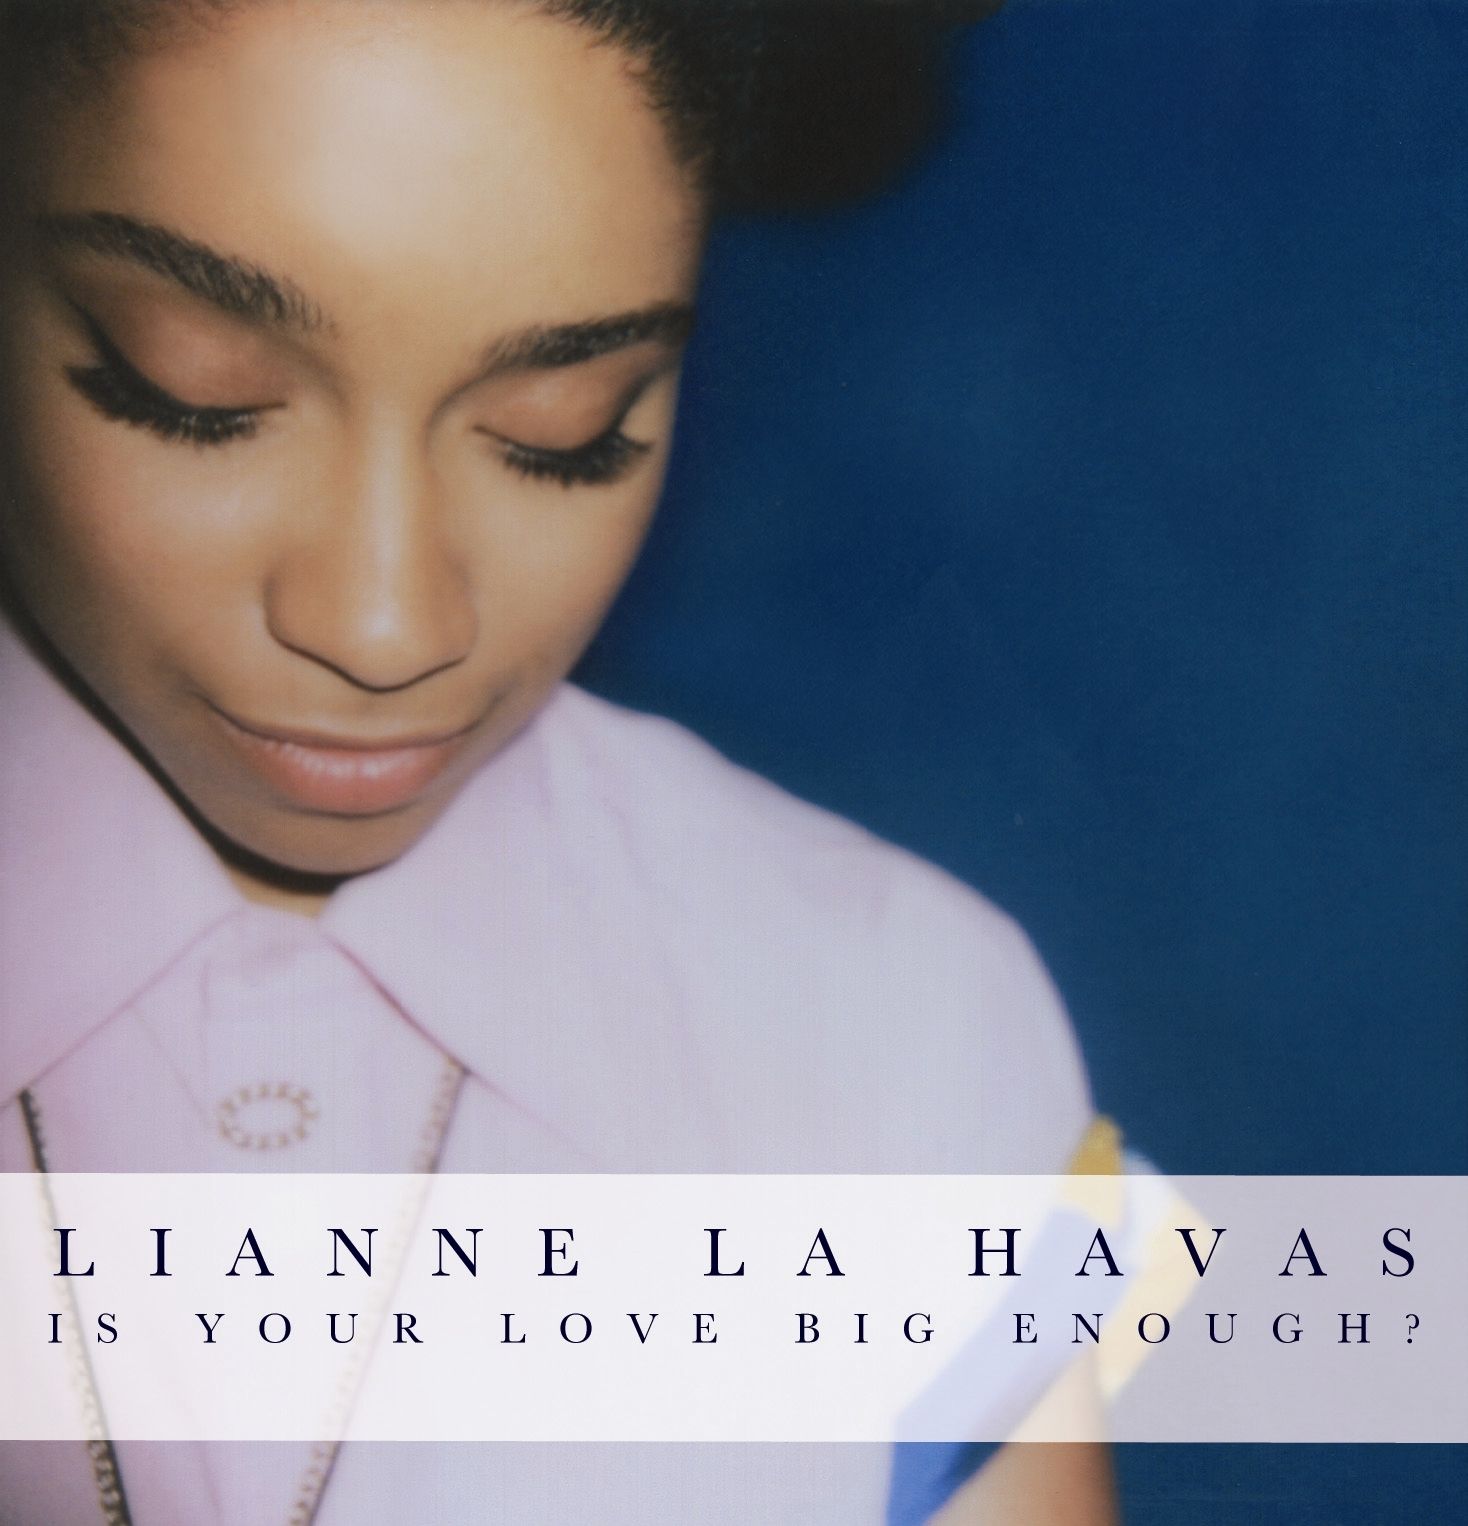 Imagem do álbum Is Your Love Big Enough? do(a) artista Lianne La Havas